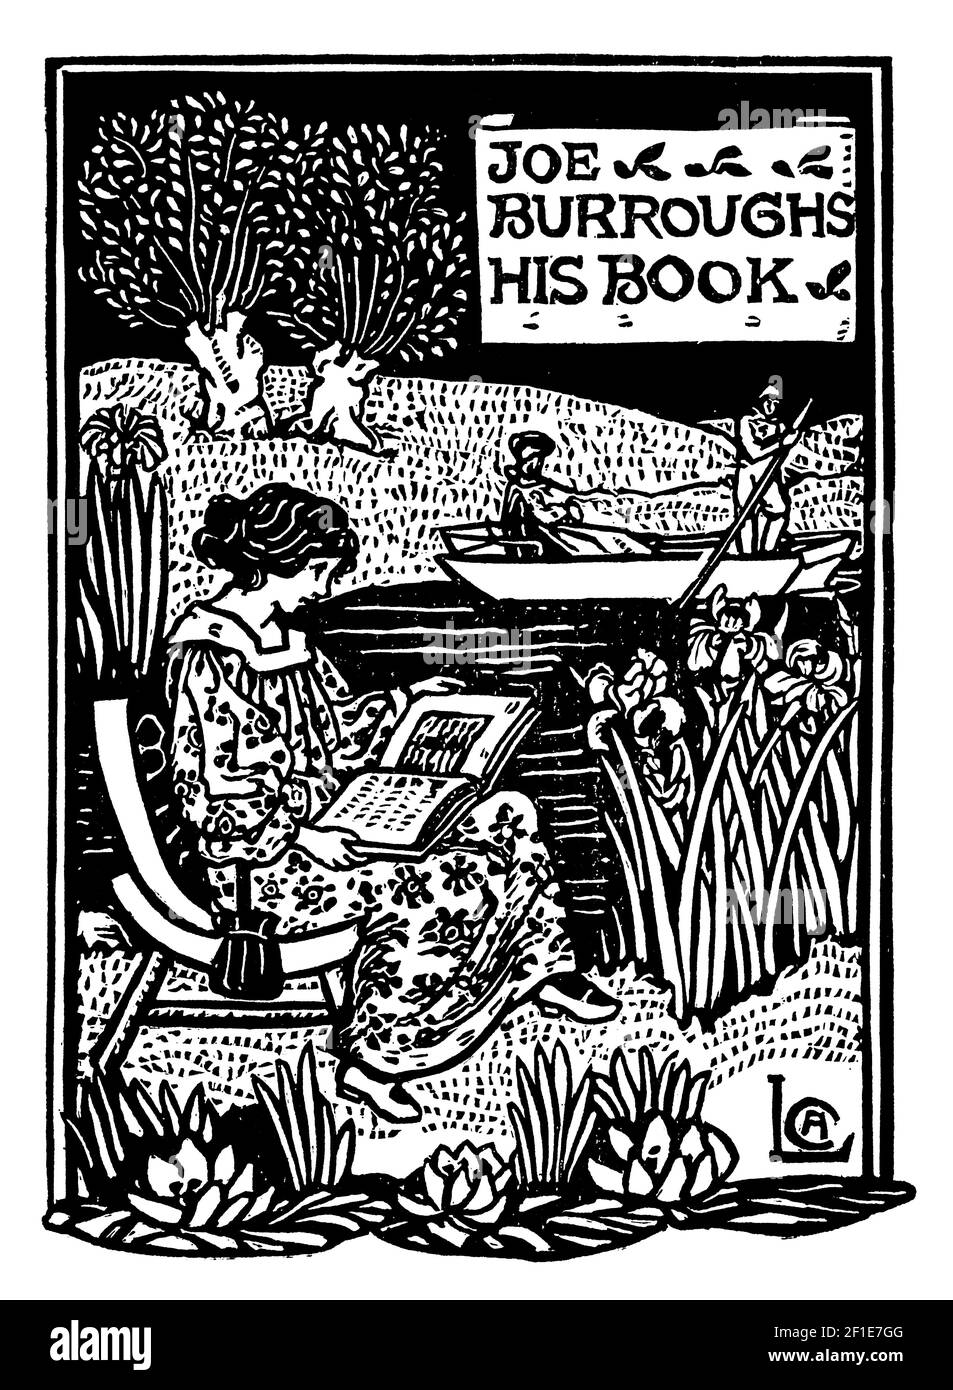 Femme lisant le livre sur la plaque de bois de la rivière conçue pour Joe Burroughs par l'auteur, poète et illustrateur Celia Levetus Banque D'Images